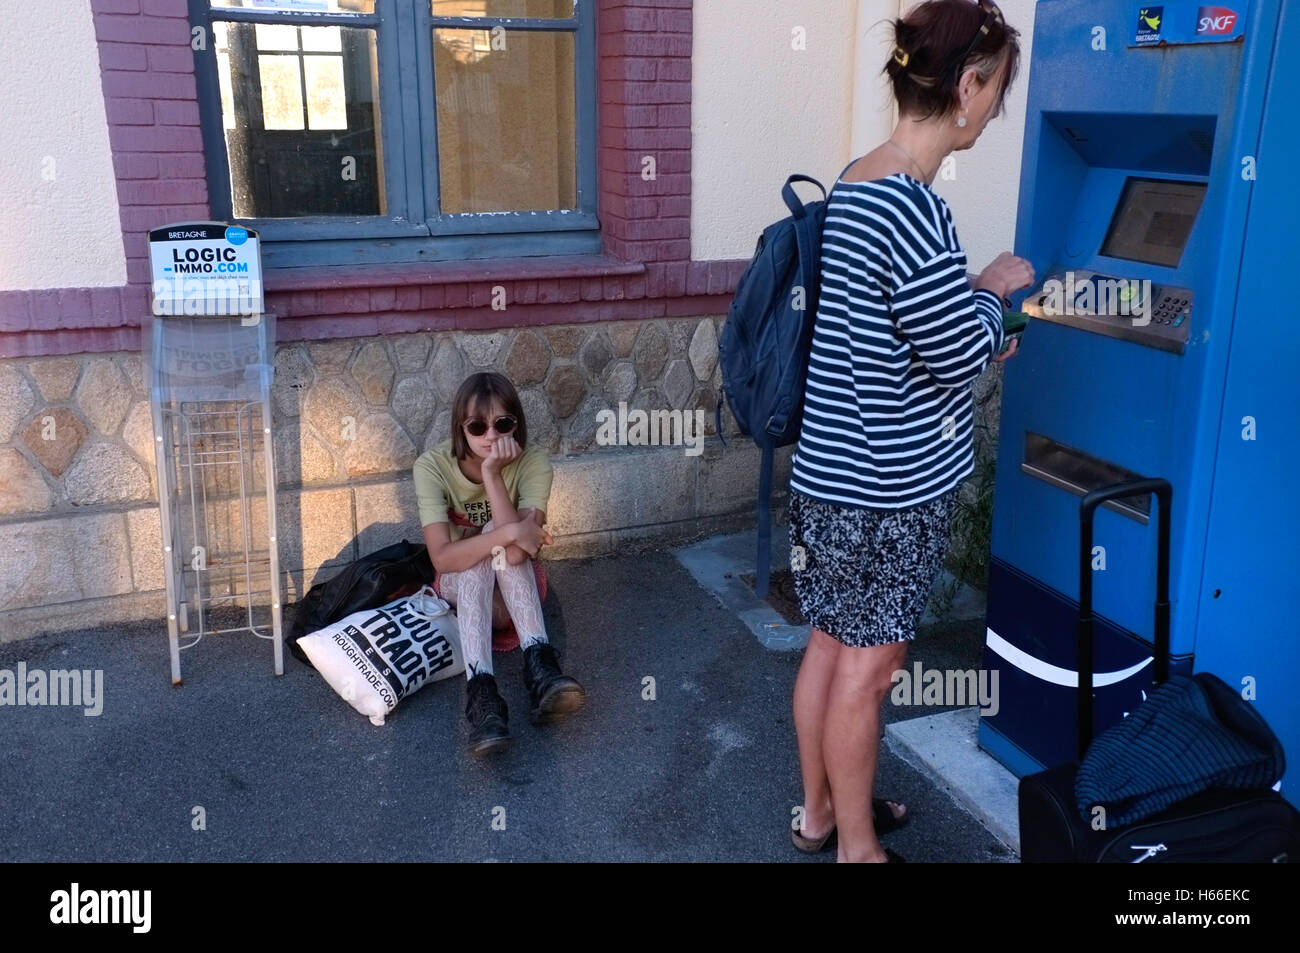 Una madre compra un billete de tren para mientras que su hija se sienta aburrido. Foto de stock